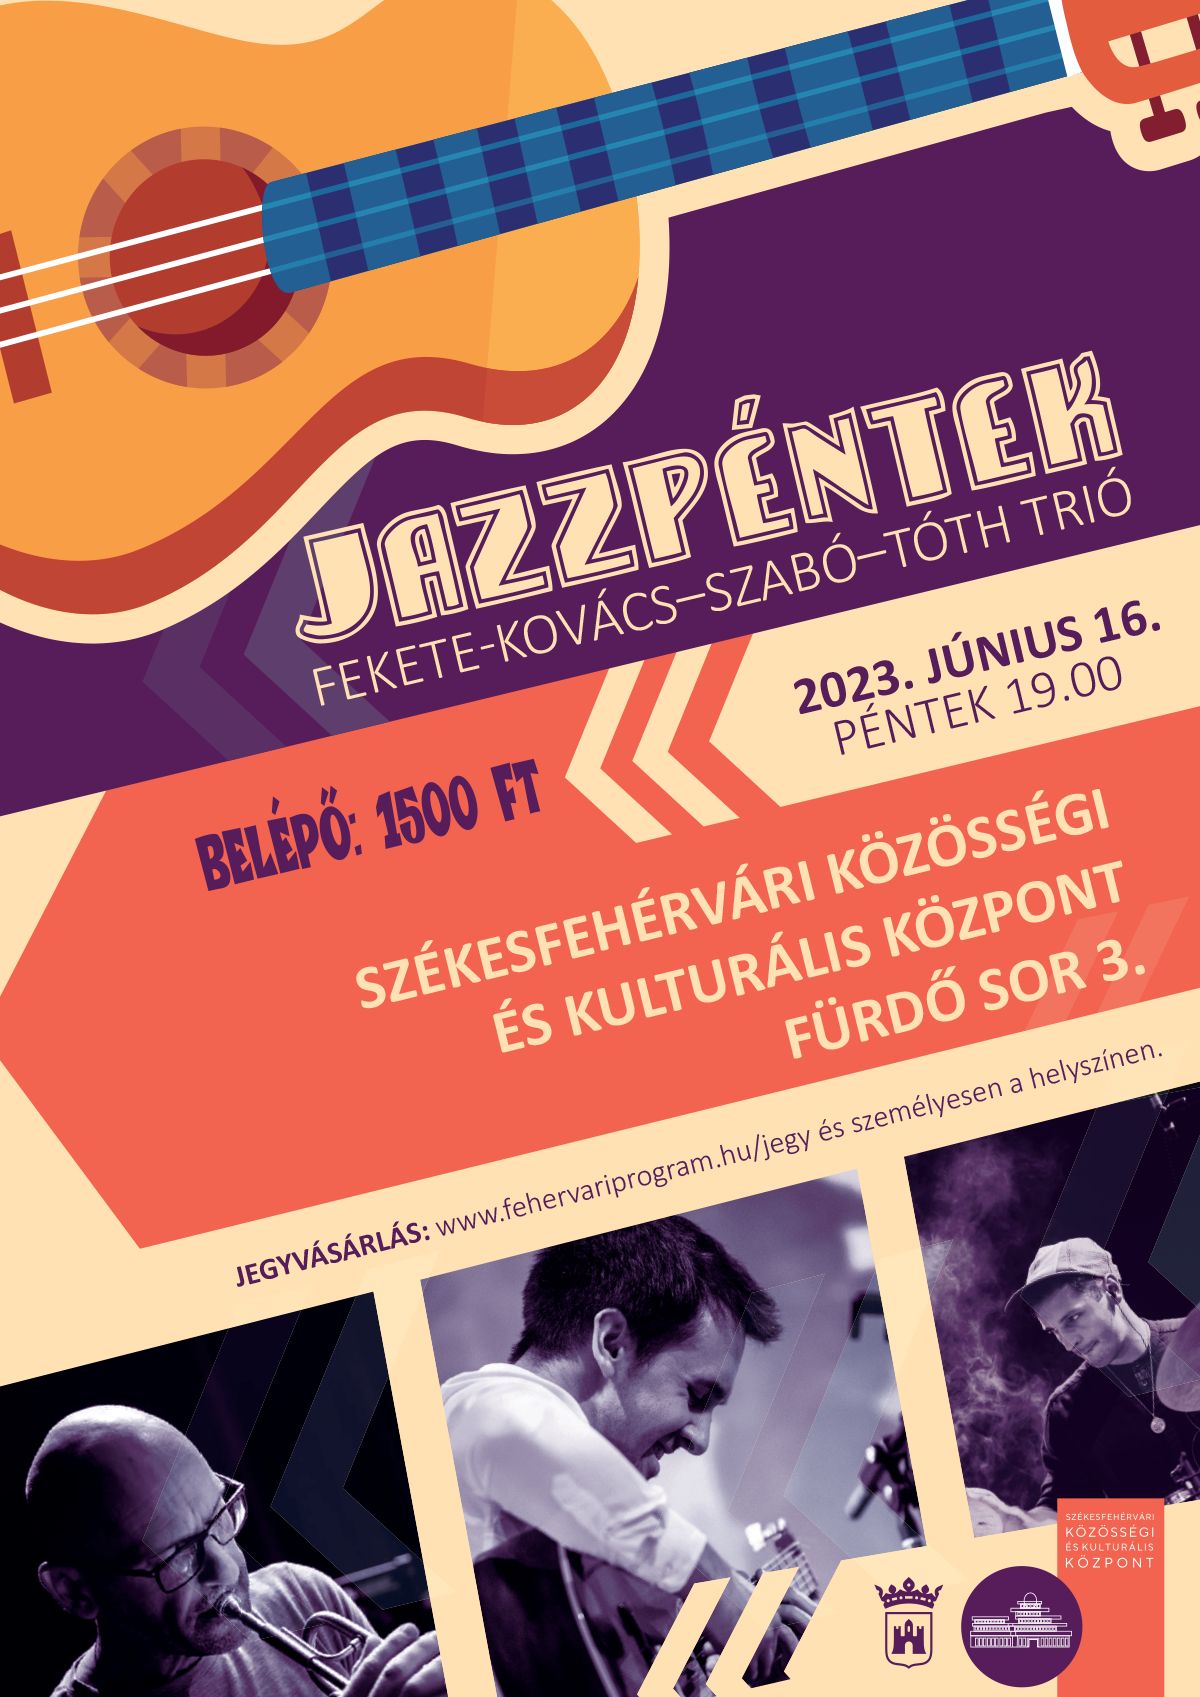 Visszatér a jazzpéntek - júniusban ismét szól a jazz a Fürdő soron